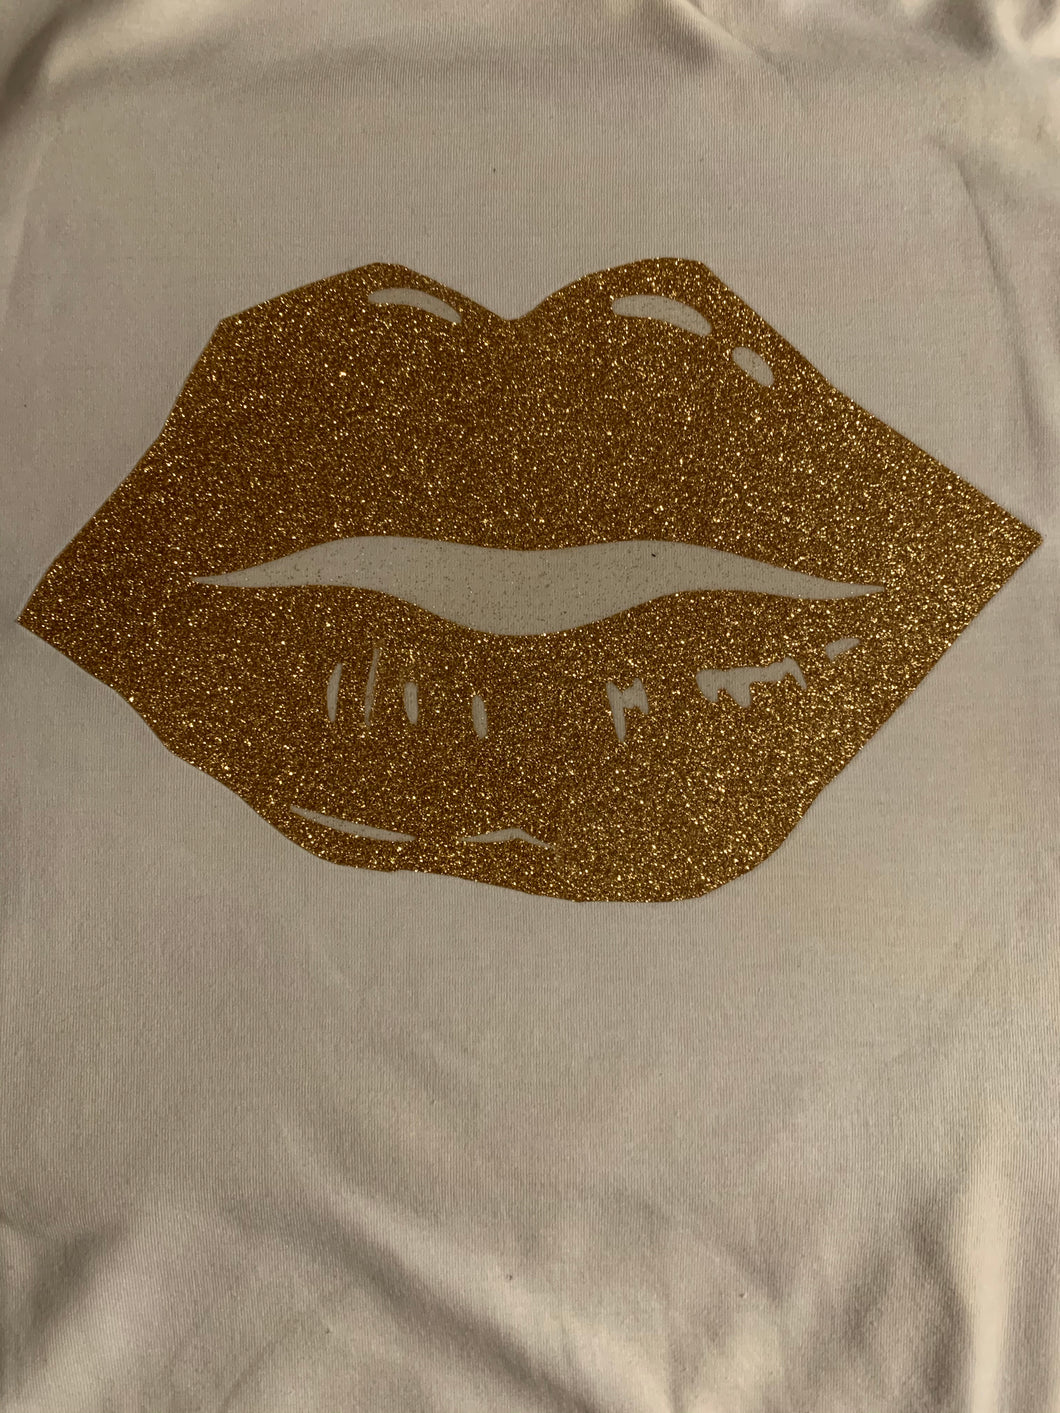 Golden Lips T-Shirt